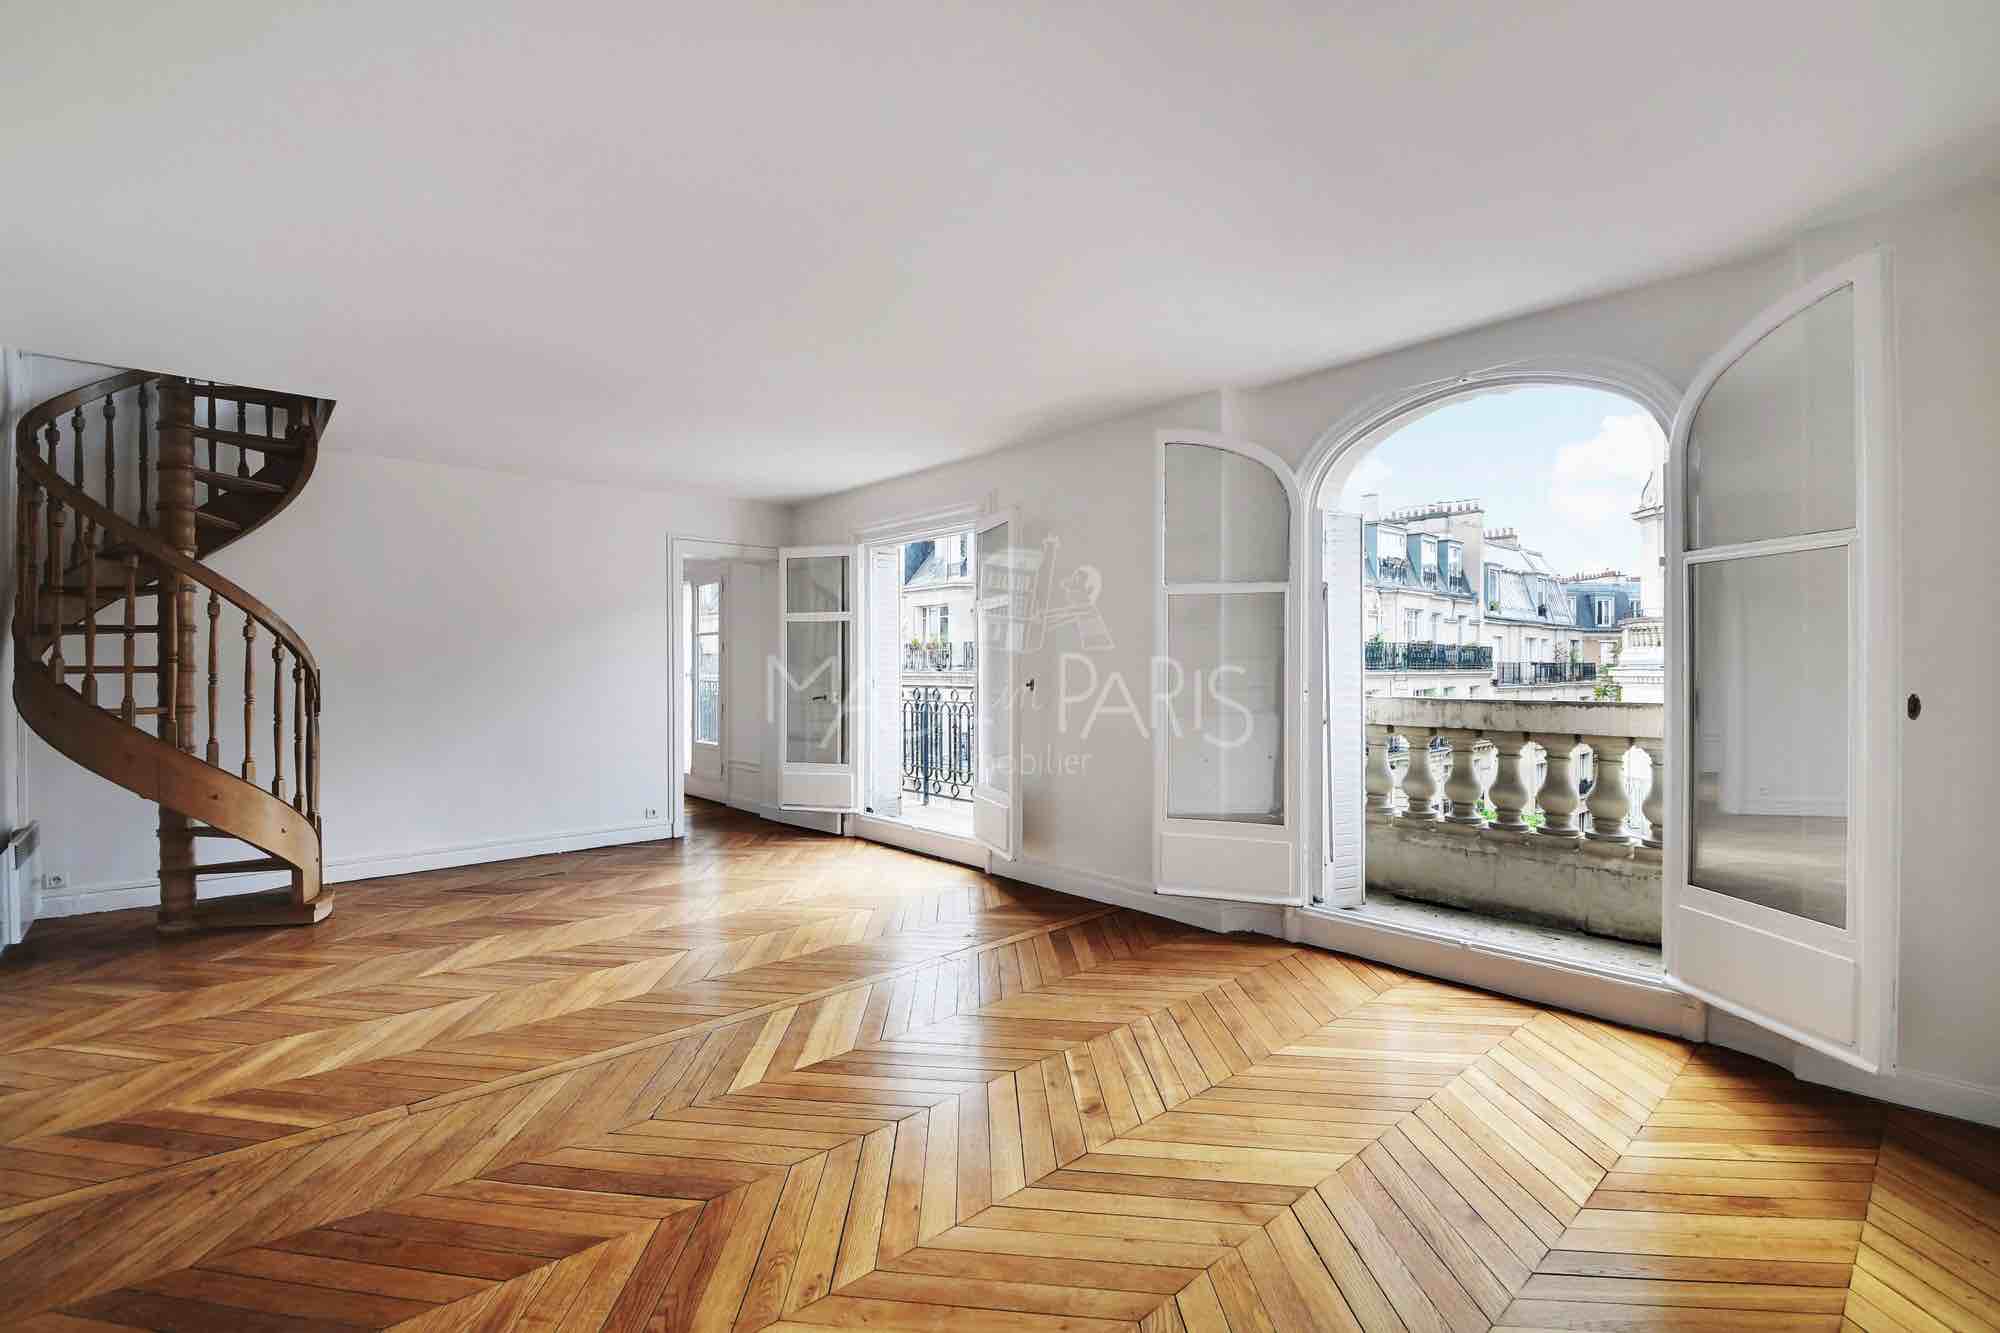 Made in Paris Immobilier - Photo du séjour d'un appartement en location composé de 5 Pièces et situé à Paris - 75015